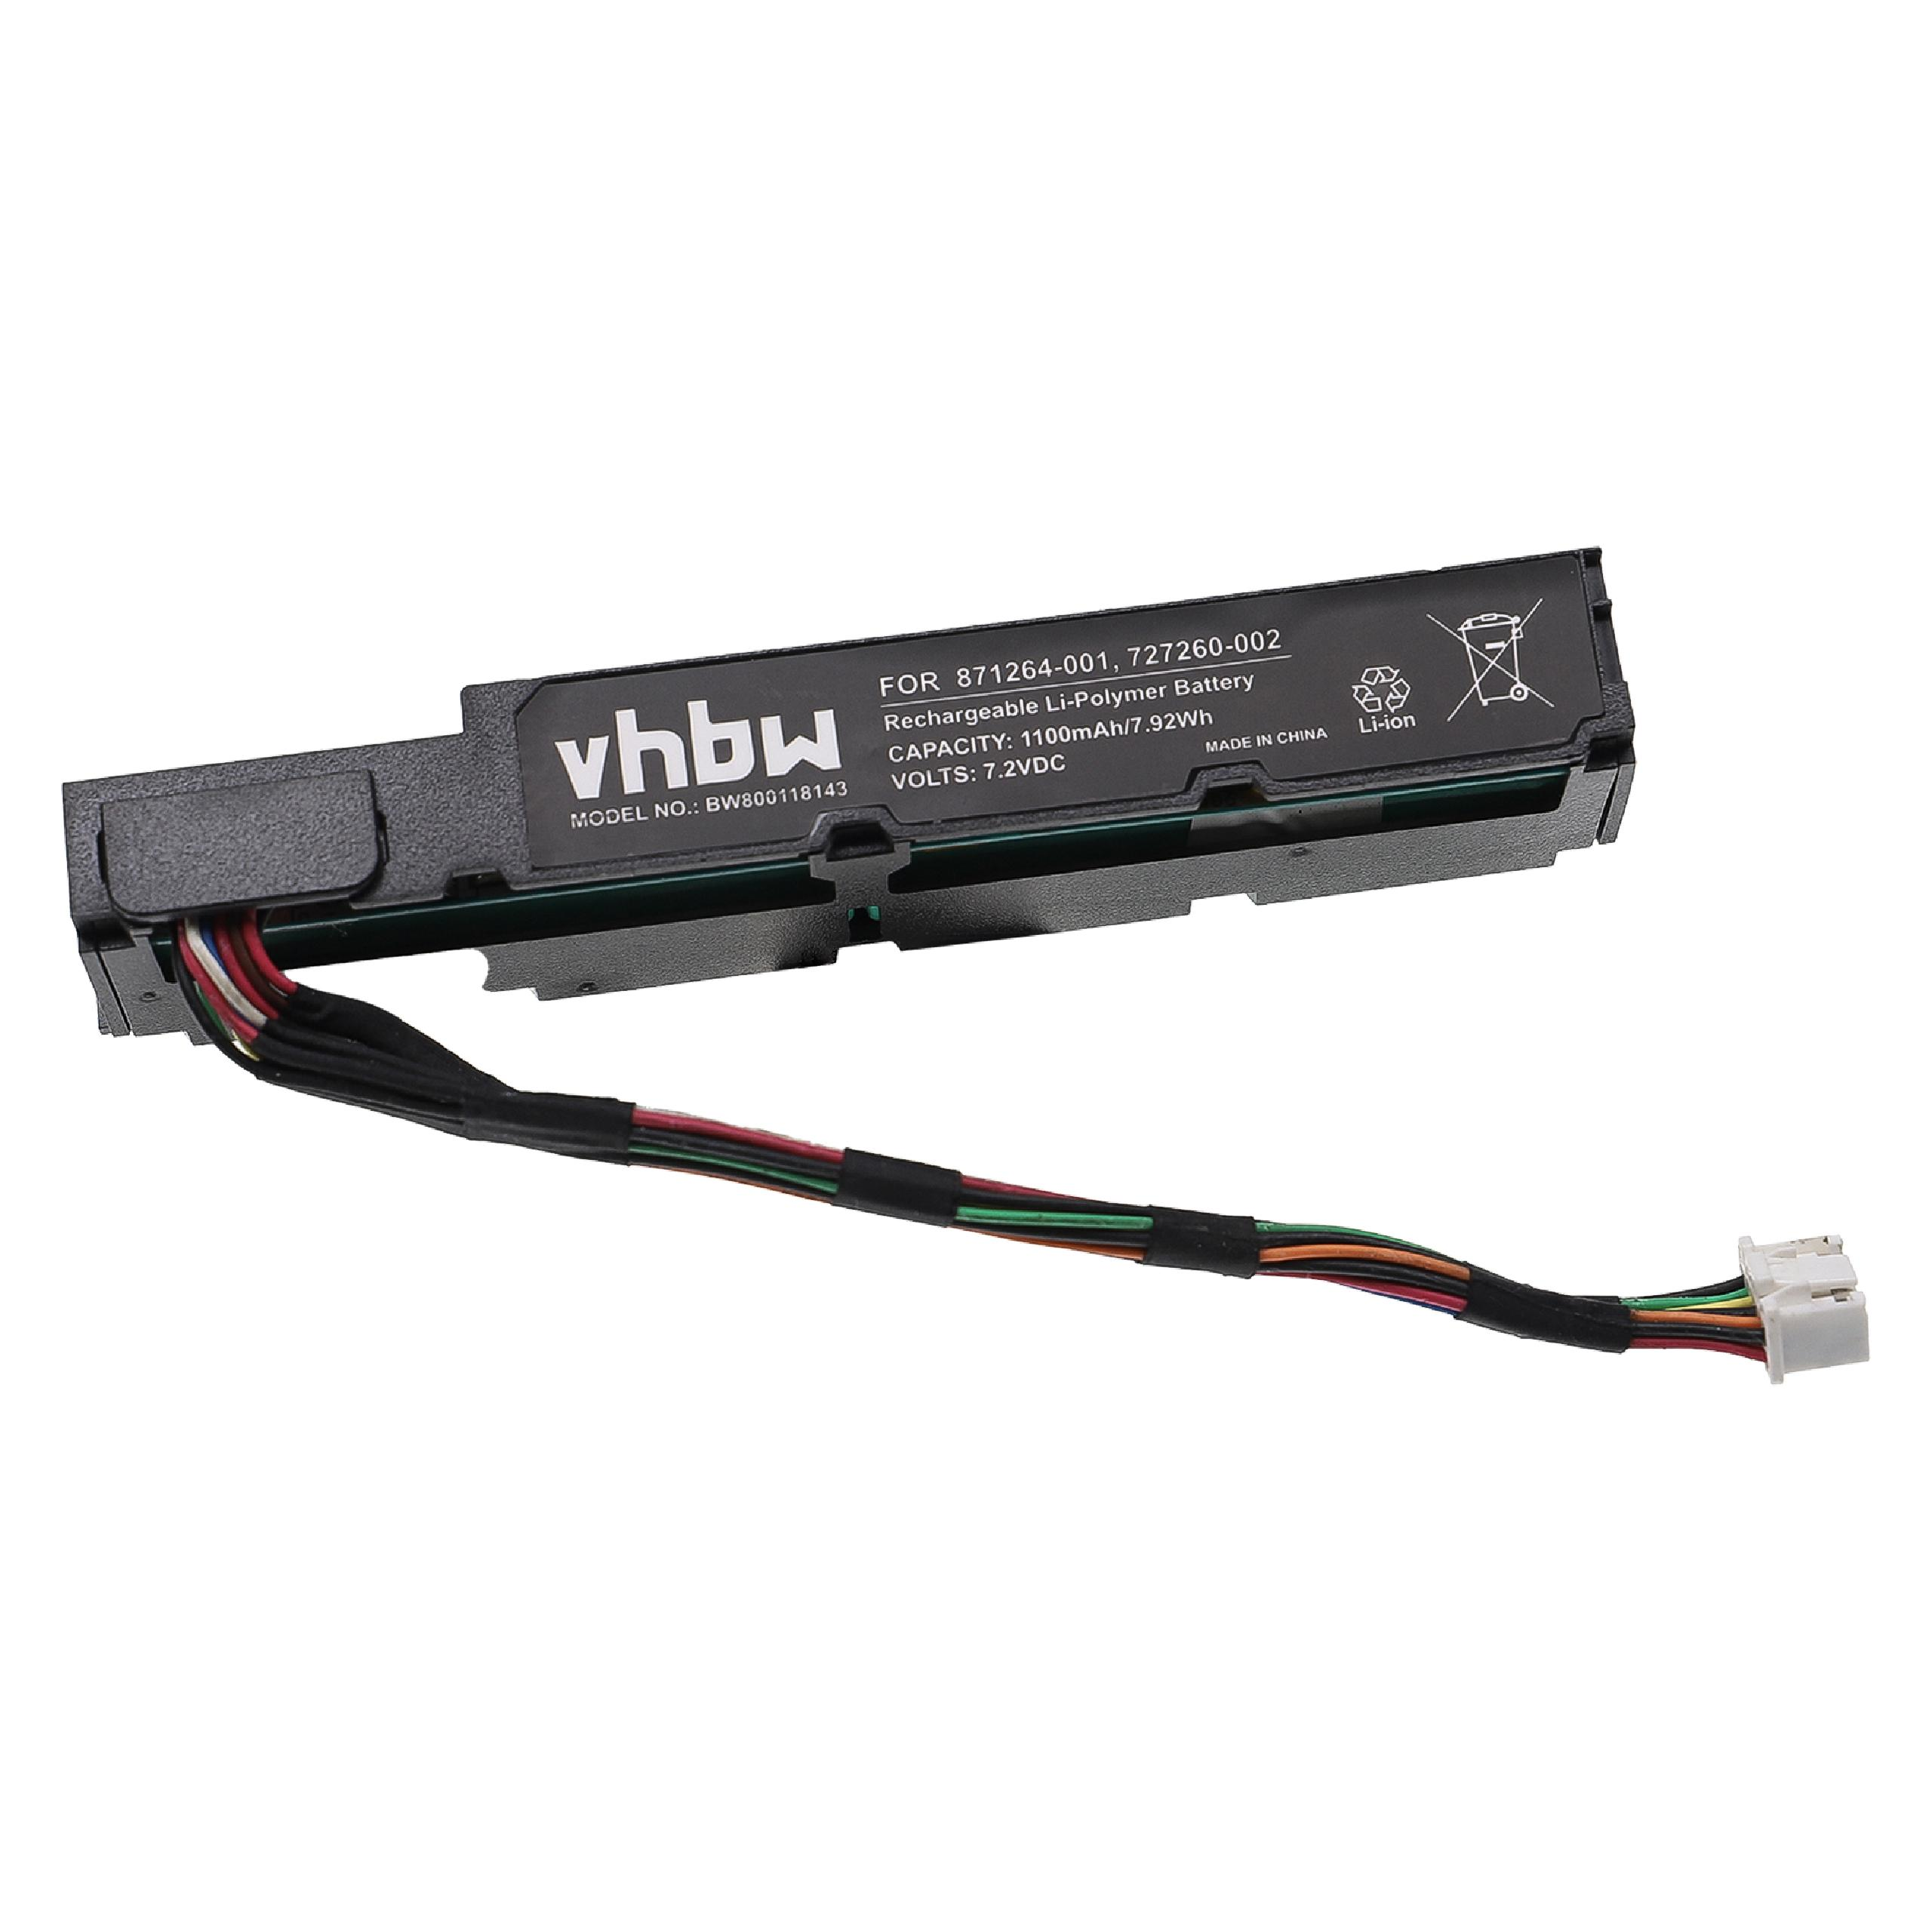 VHBW kompatibel P840ar Controller Smart Akku HP Raid-Controller, 3.7 mit - P441 1100 P816i-a Array Li-Ion Controller, SR Controller, Volt